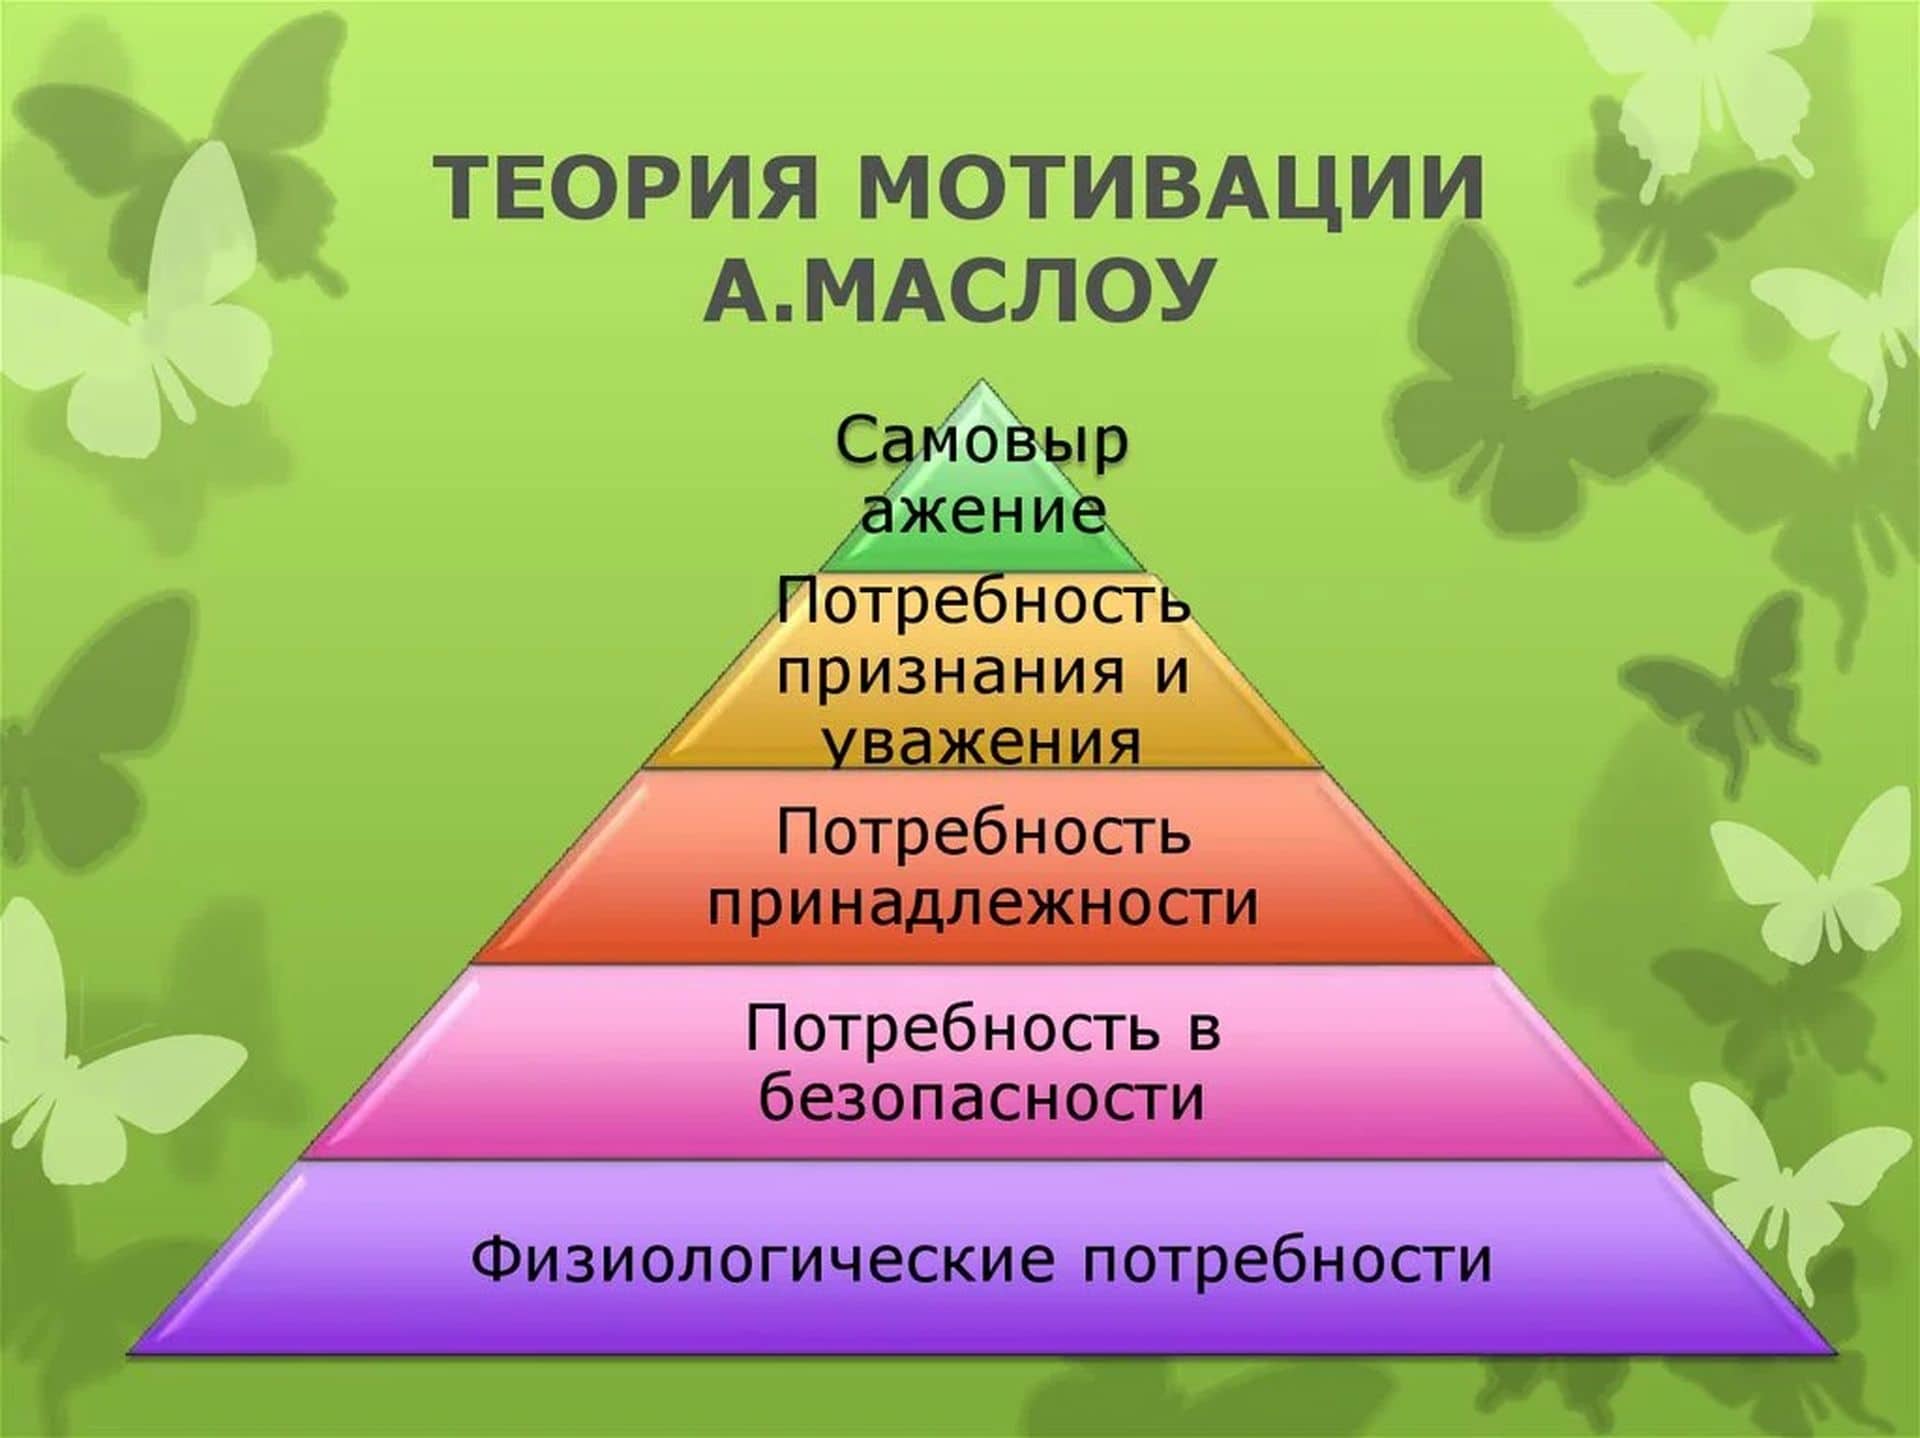 Мотивация человека основывается на. Теория потребностей Маслоу. Теория мотивации Маслоу пирамида. Концепция потребностей Абрахама Маслоу. Теории Маслоу 7 уровней.